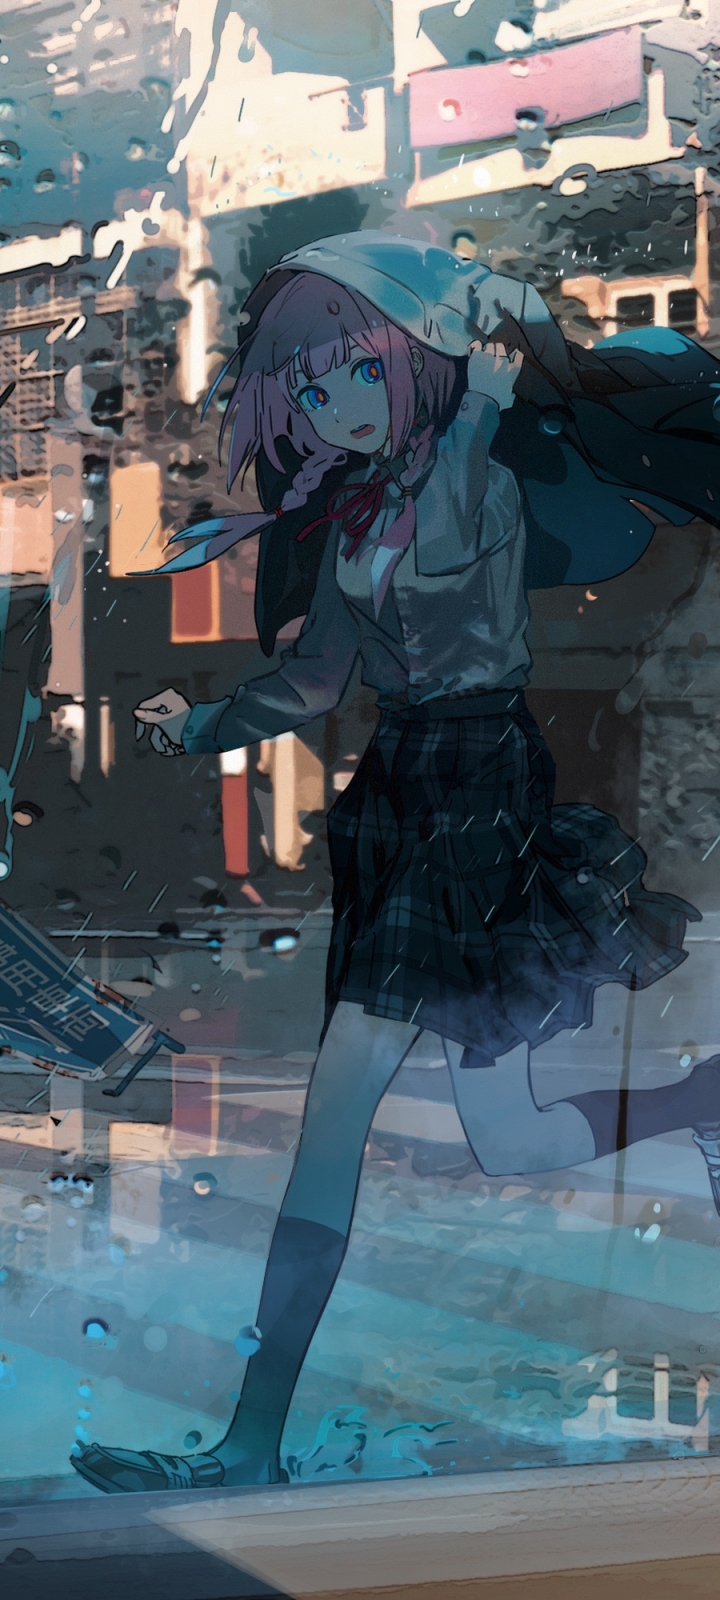 Hình nền anime đẹp cho Wallpapers Anime iPhone phong cách Nhật Bản